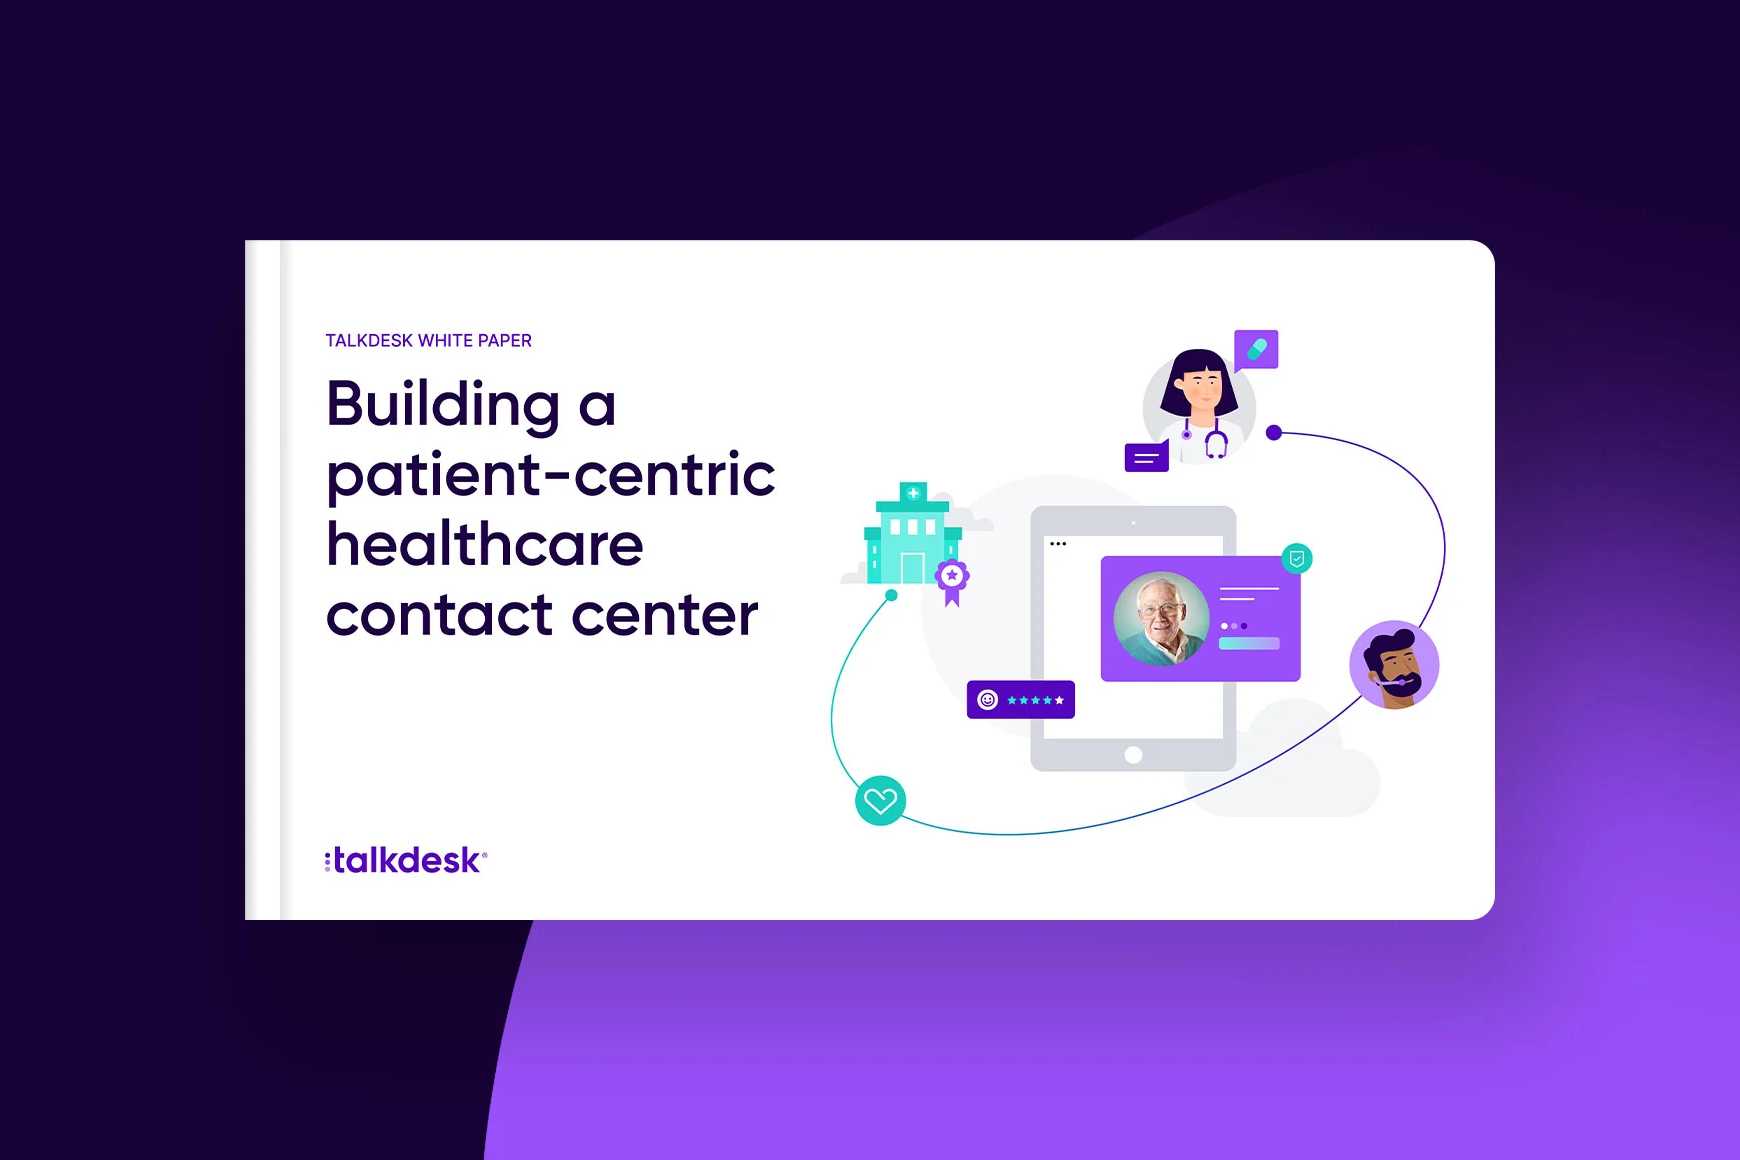 Construir um contact center de assistência médica centrado no paciente